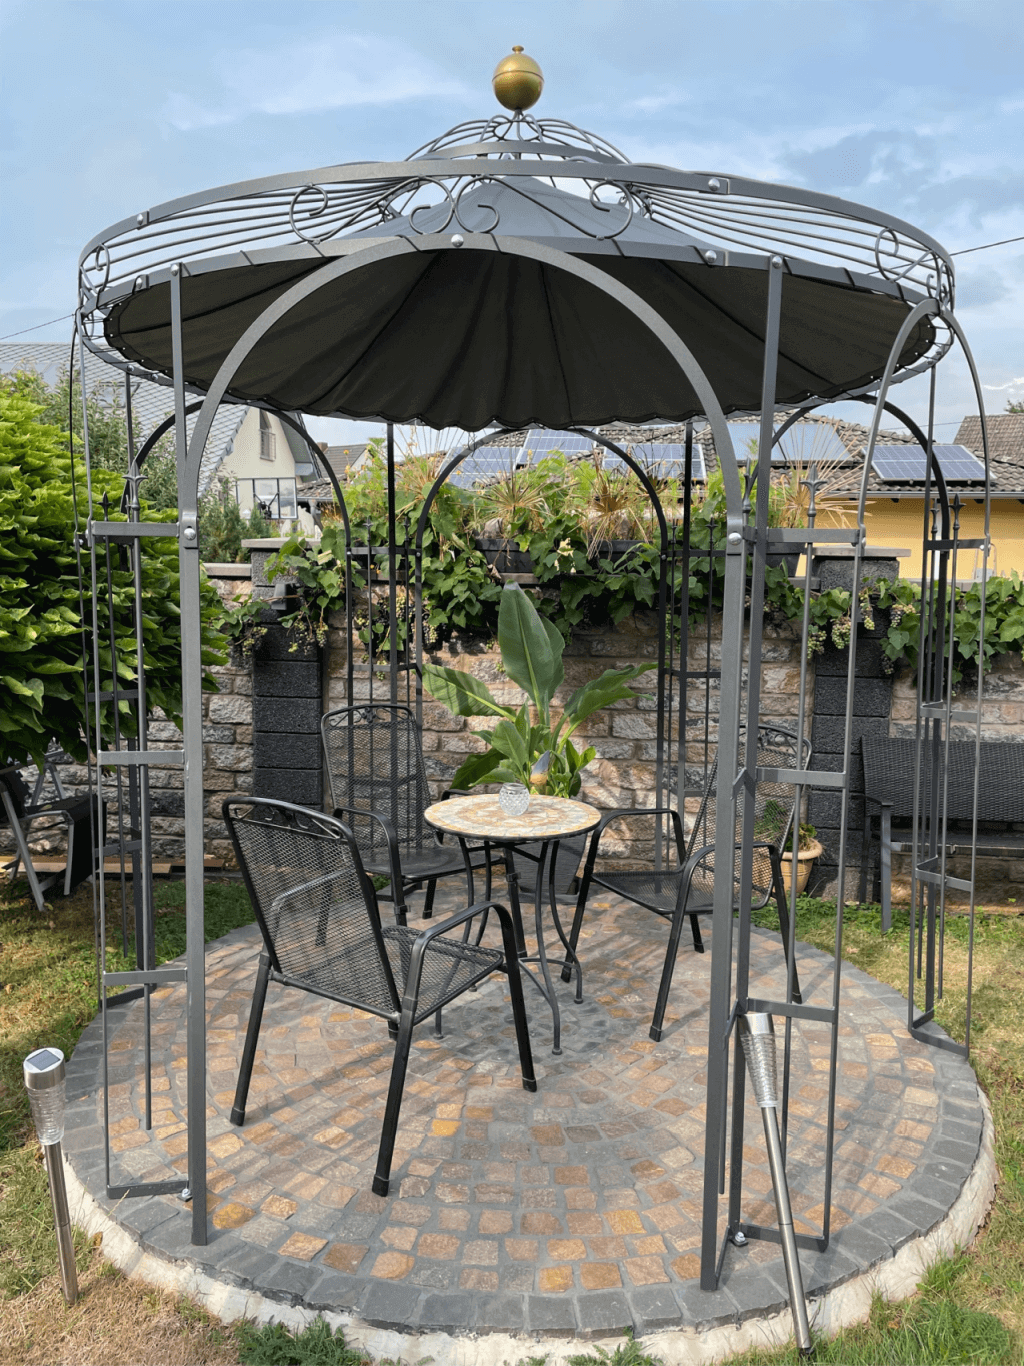 Pavillon Milano pulverbeschichtet anthrazit mit Messingkugel und Sonnensegel in Anthrazit in einem Garten